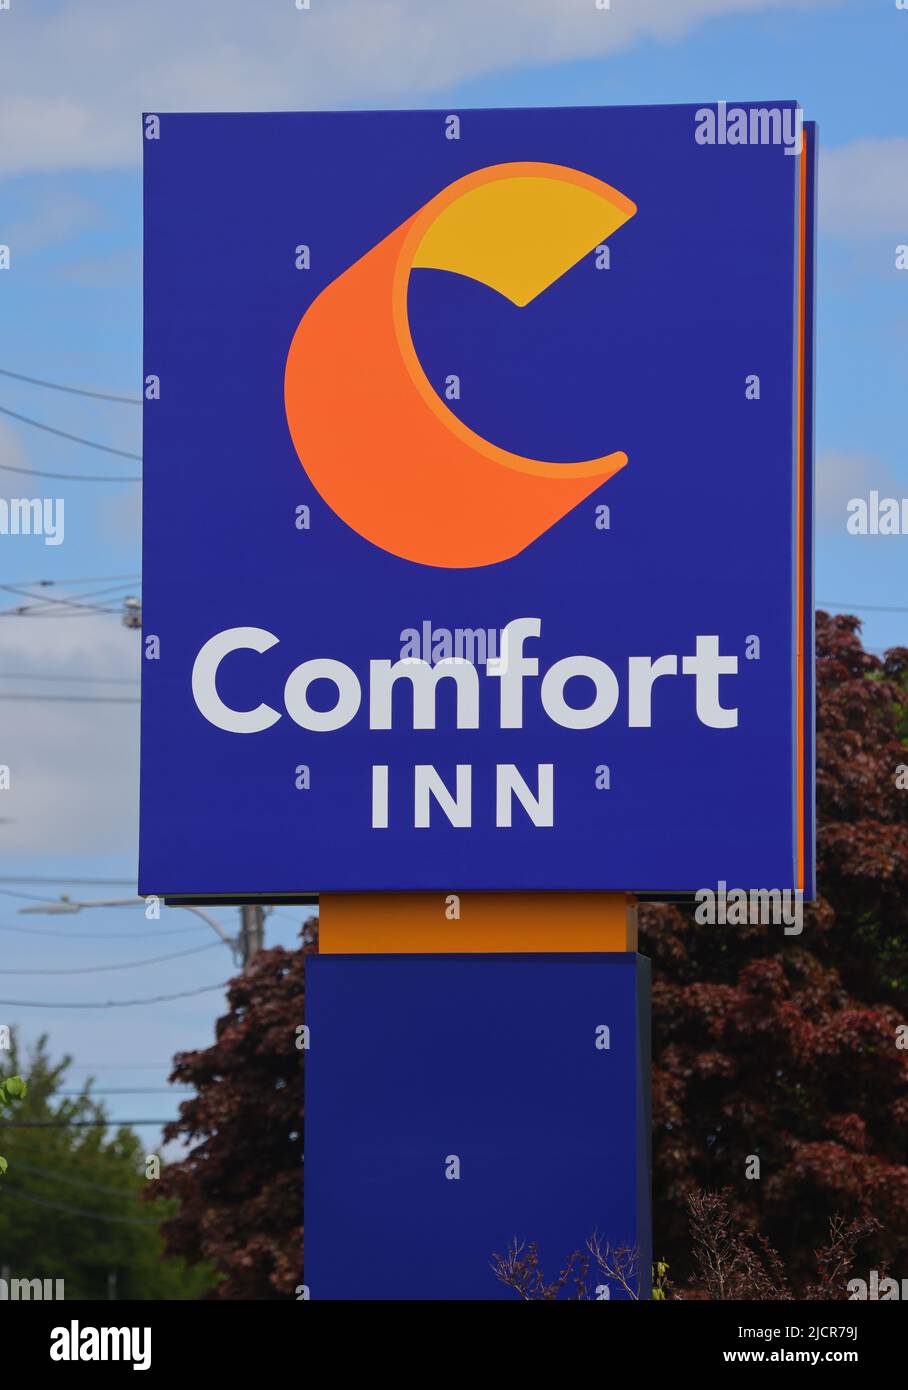 Das Schild des Comfort Inn Hotels befindet sich vor dem Hotel. Comfort Inn ist eine mittelklassige Hotelkette, die Teil der Gastfreundschaft ist. HALIFAX, NOVA SCOTIA, KANADA - JUNI 22 Stockfoto